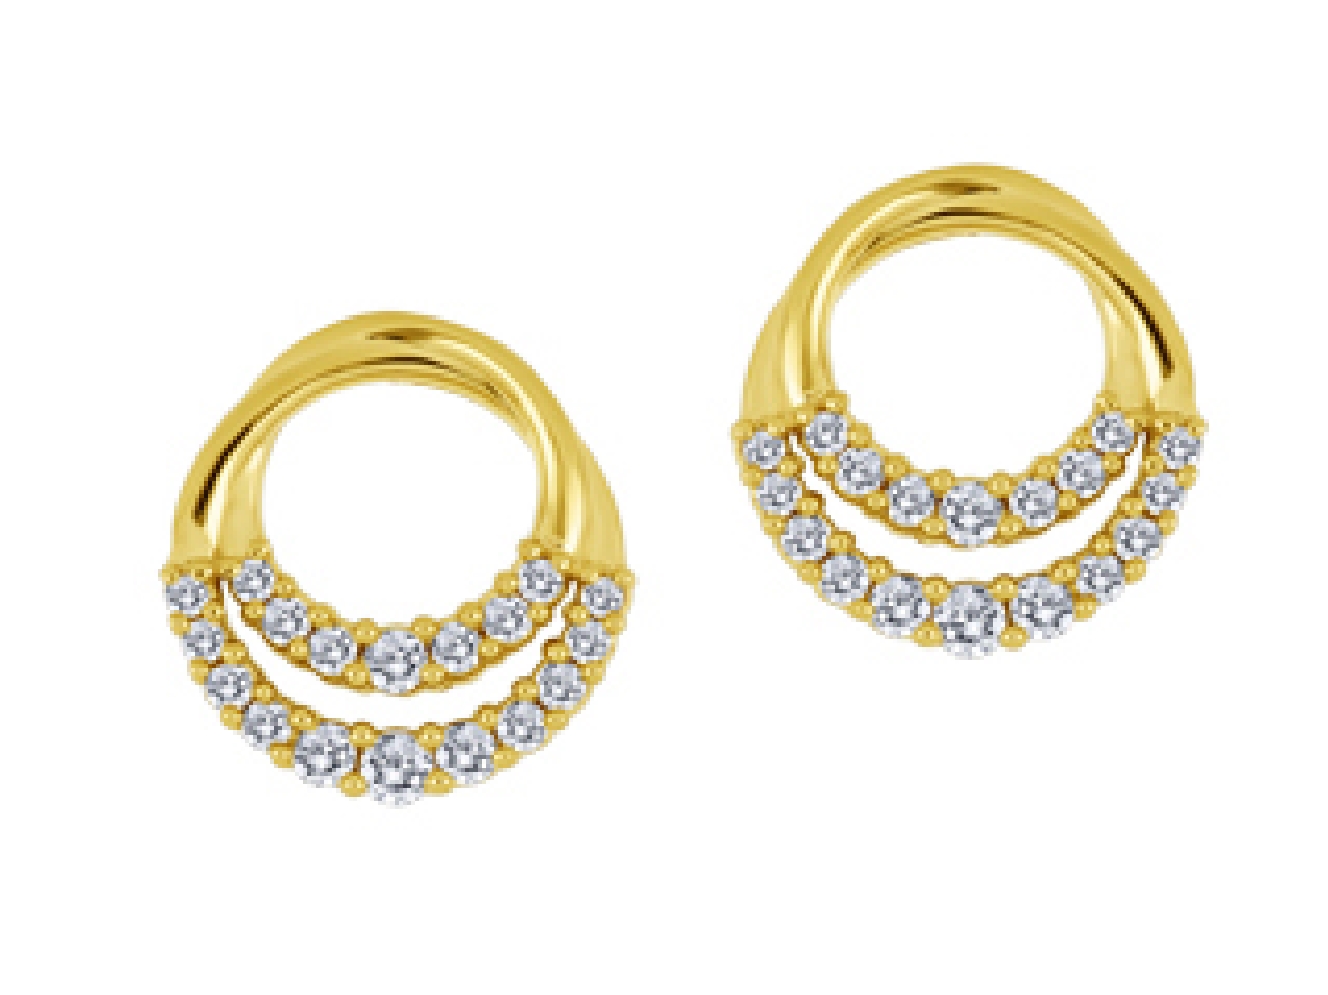 Canadian Diamond Earrings 0.27ctw
10KT White G...